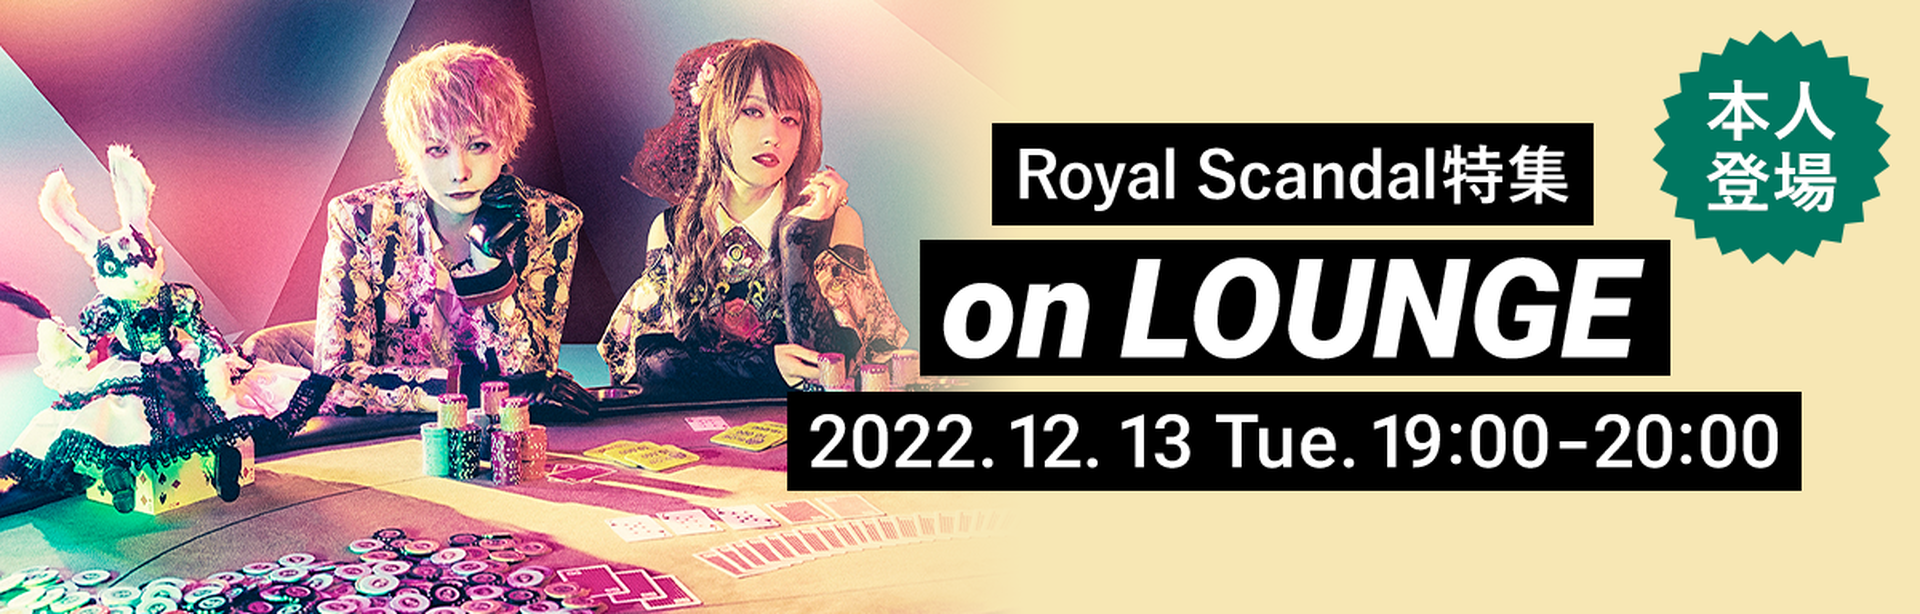 本人登場 Royal Scandal 特集 on LOUNGE 2022年12月13日 火曜日 19:00～20:00開催